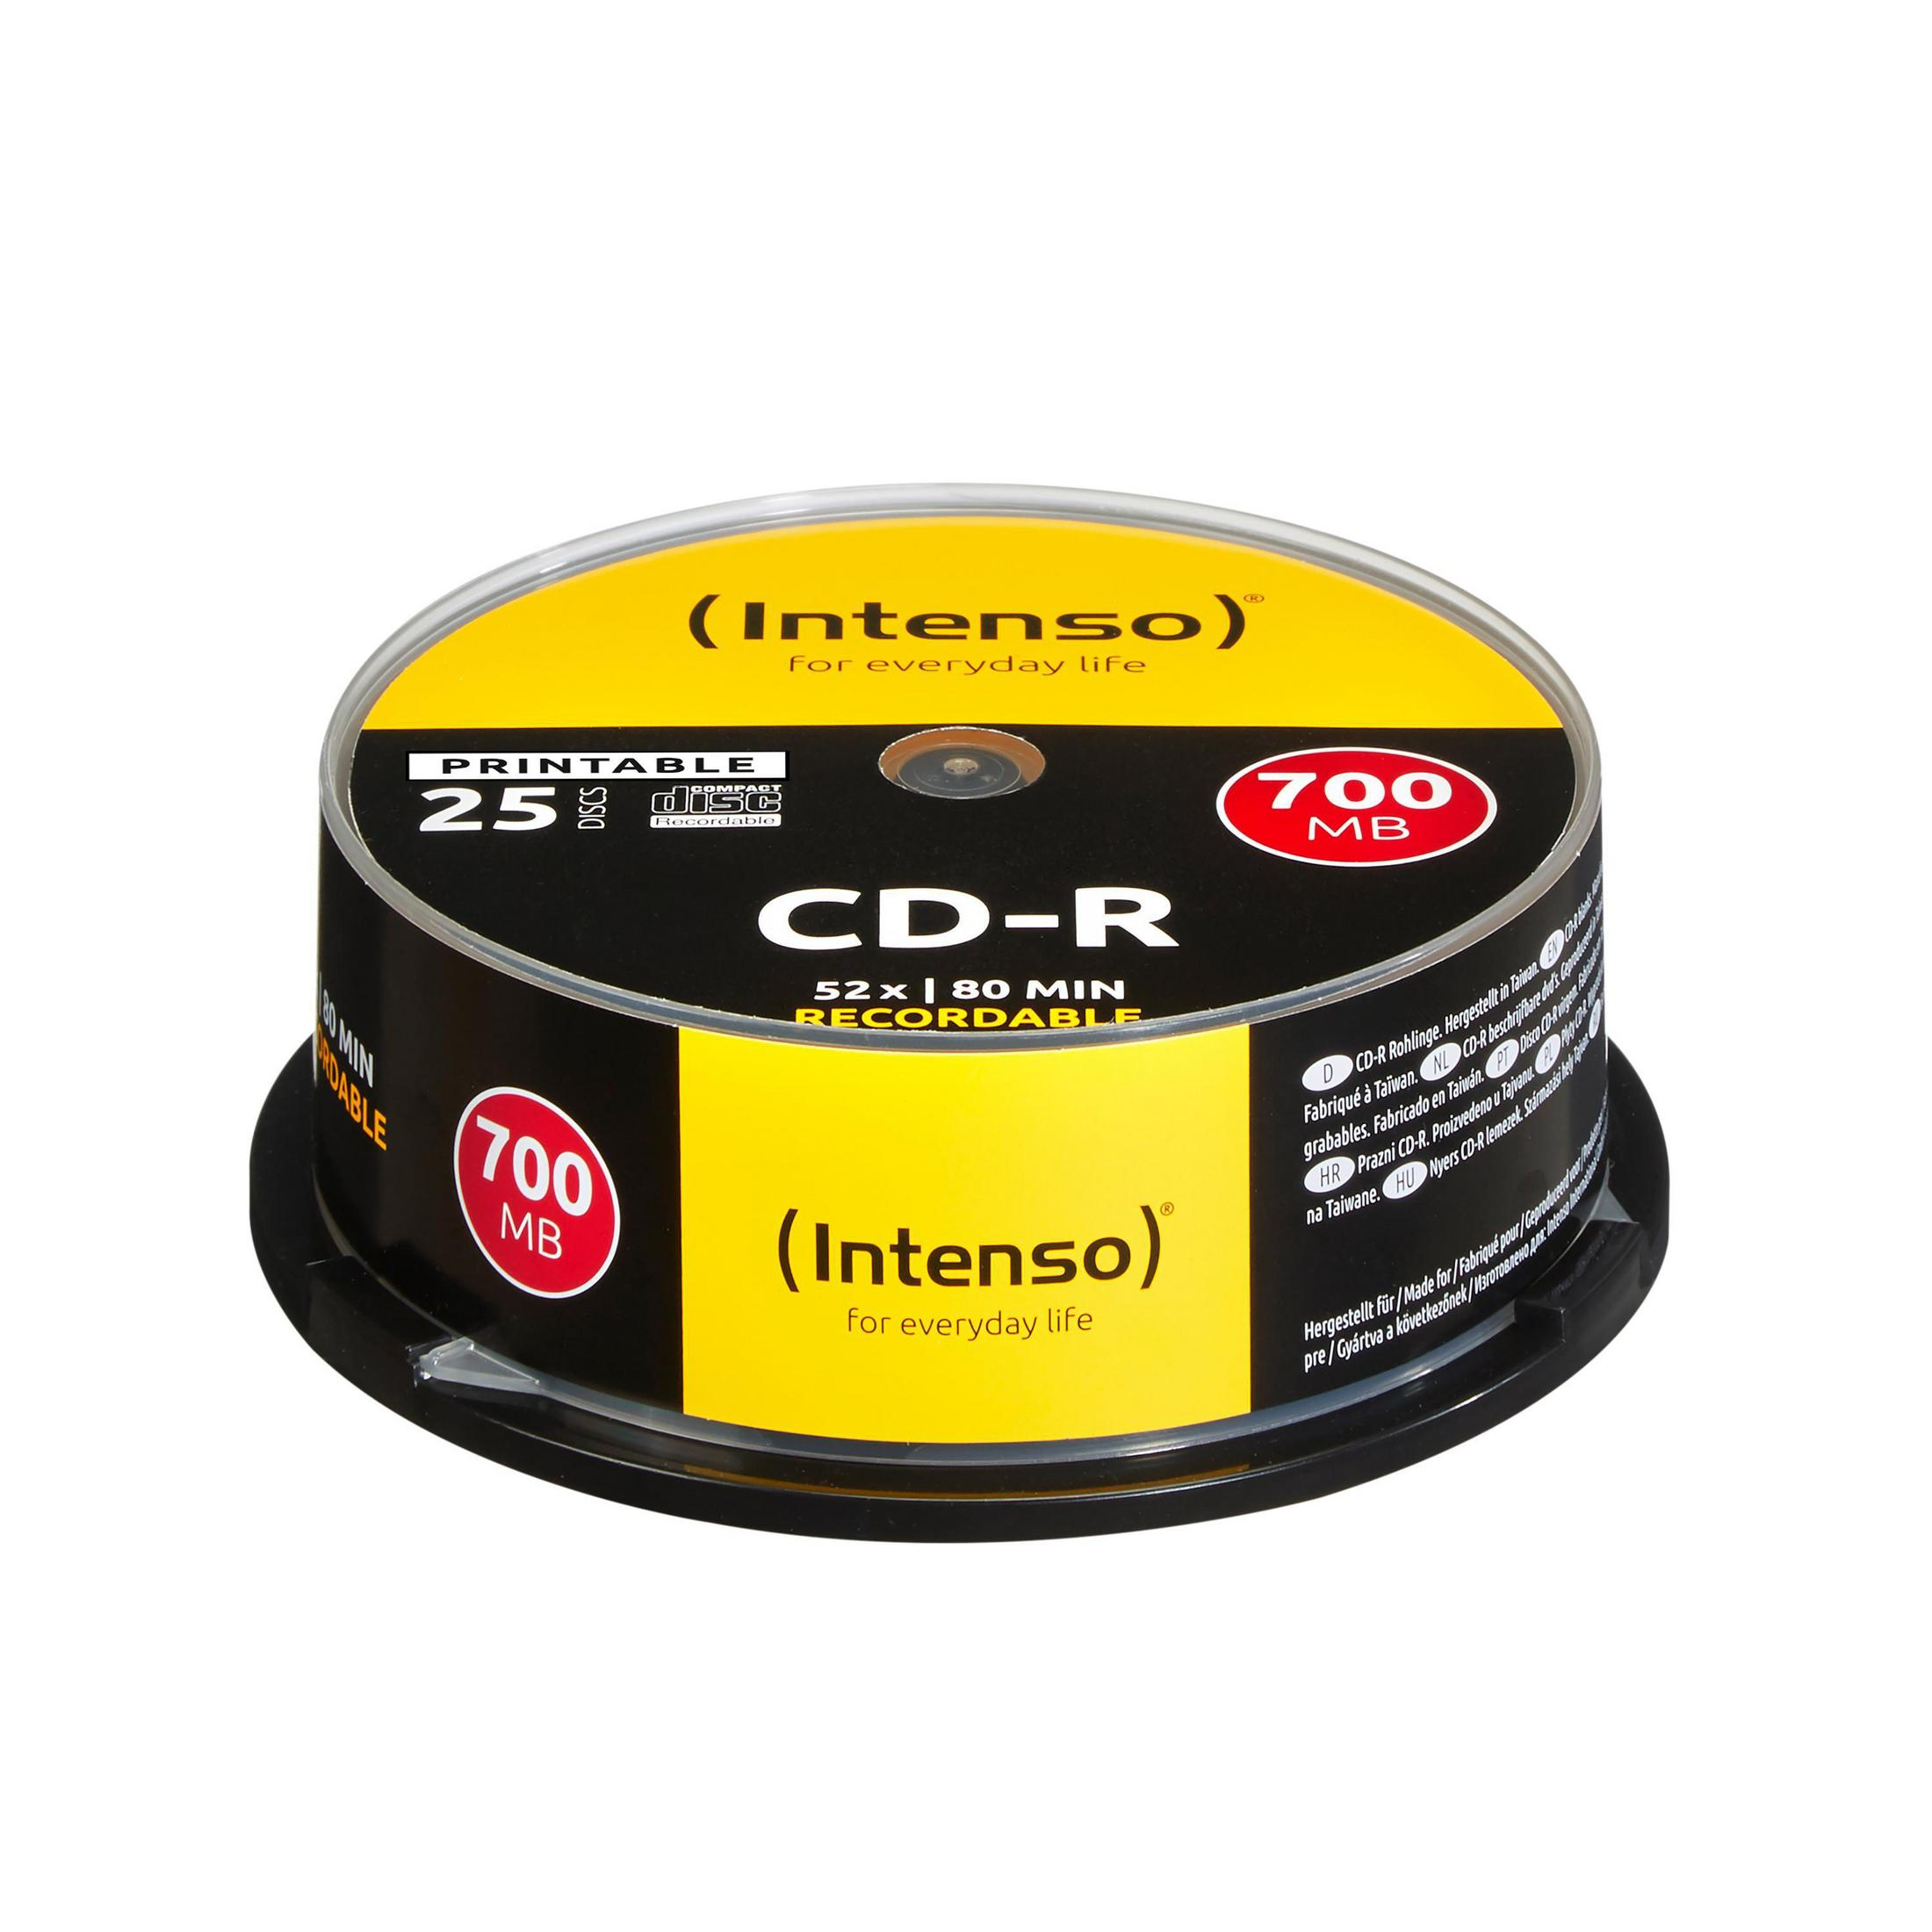 1801124 schwarz/grau/orange CD-R 700 INTENSO CD-R MB, 80 CAKE PRINTABLE 25ER